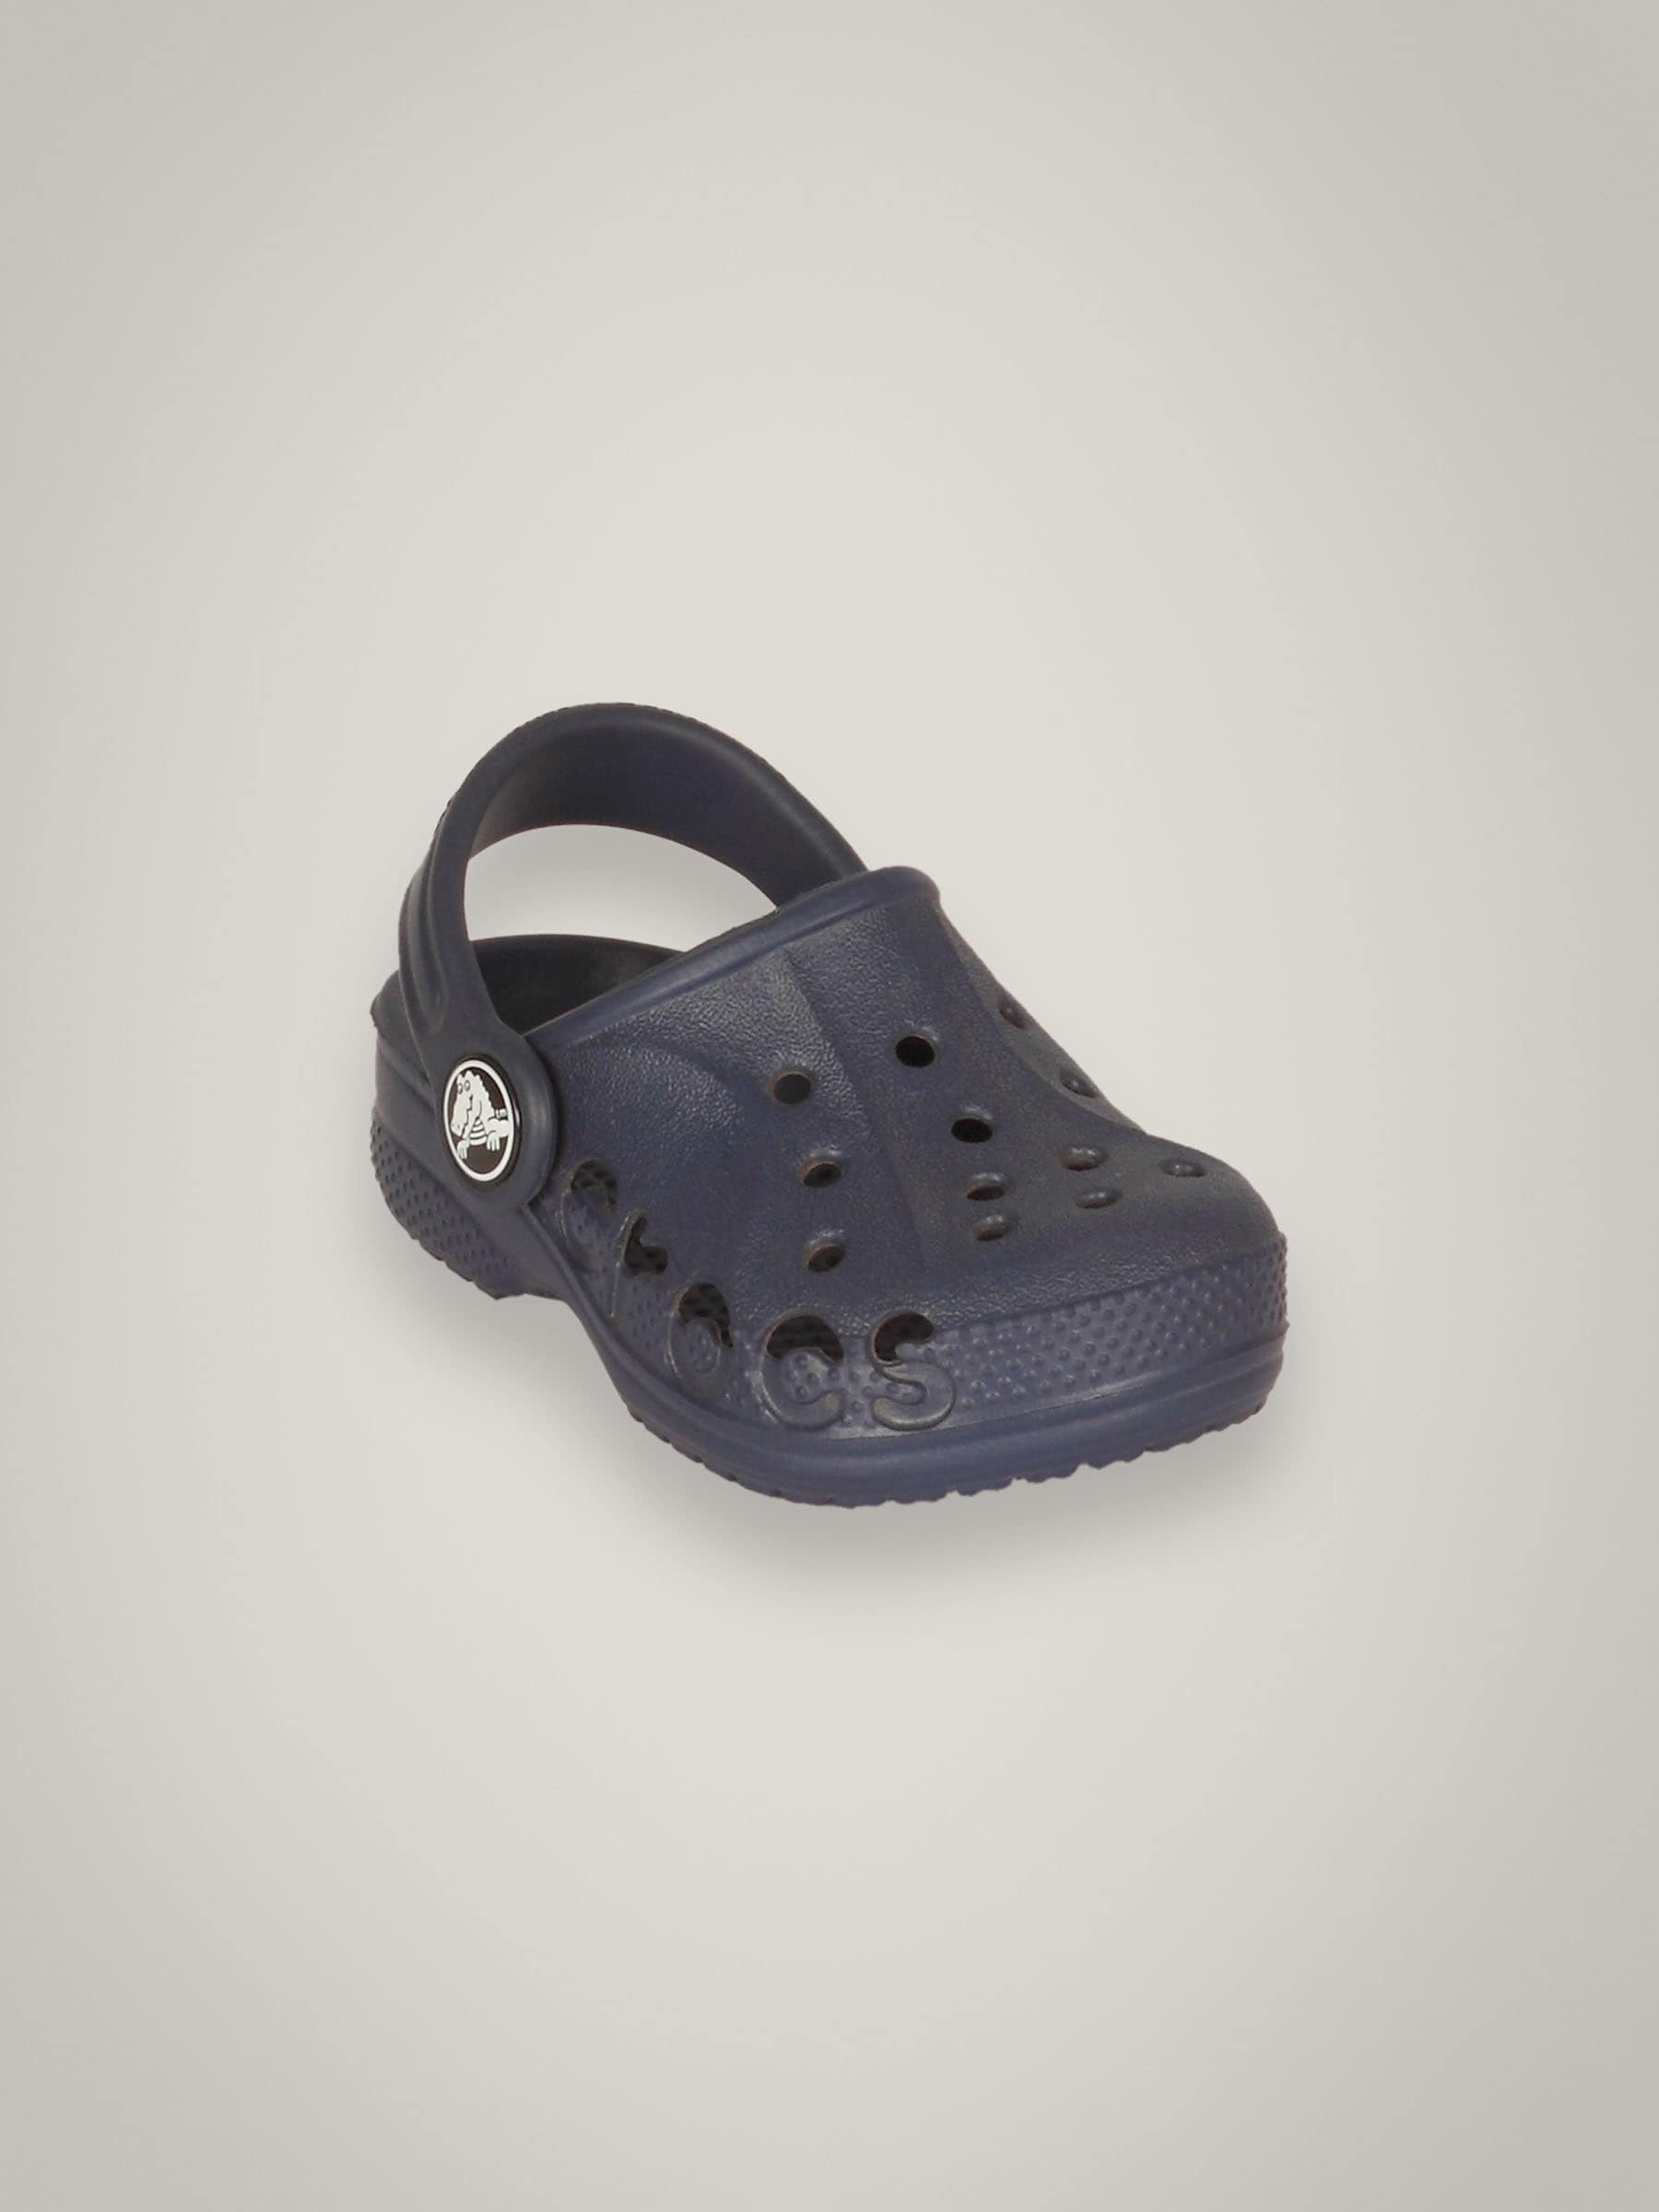 Crocs Kid's Baya Navy Kidswear